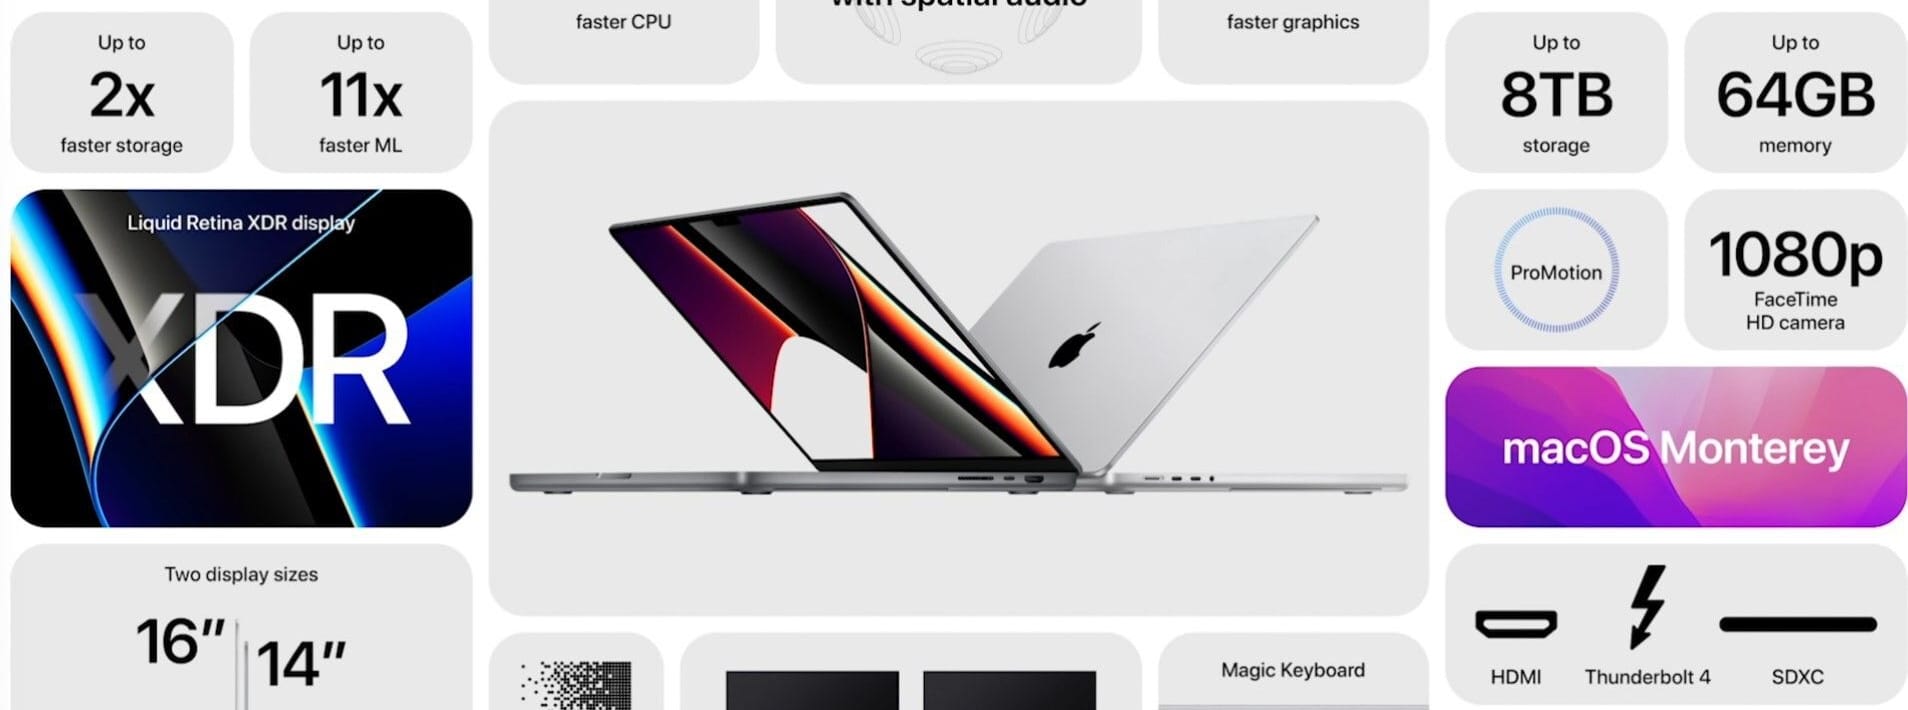 Alle Neuerungen des MacBook Pro im Überblick. Die Preise beginnen bei 2.249 Euro für die 14-Zoll-Variante und 2.749 Euro für das 16-Zoll-Modell. Ab dem 26. Oktober sind die neuen MacBooks erhältlich.